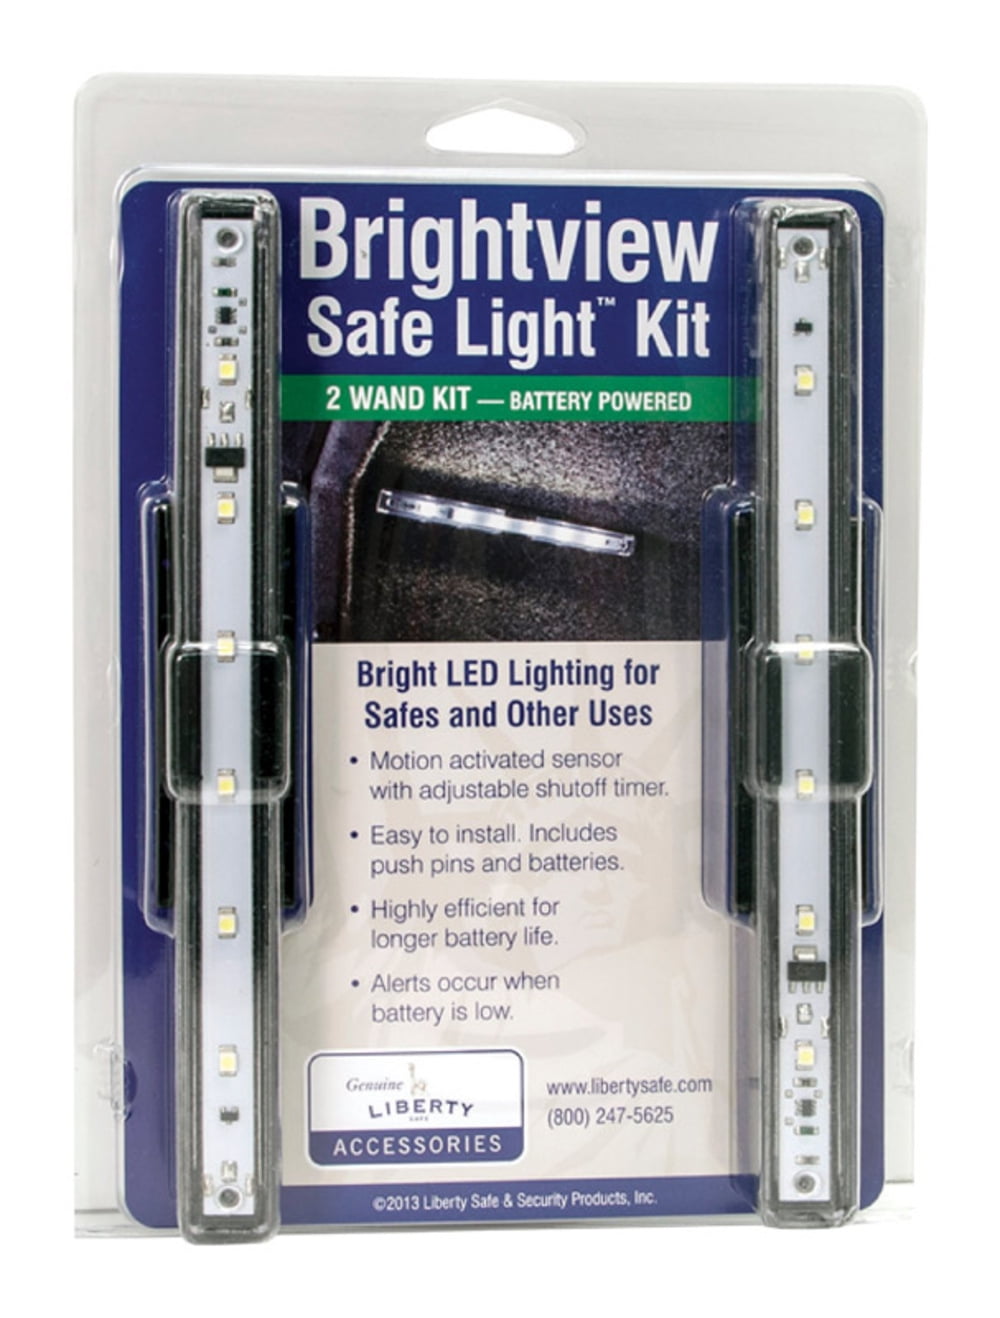 foragte offer Præferencebehandling Liberty Safe 9014528 Brightview White Safe Light Kit - Walmart.com